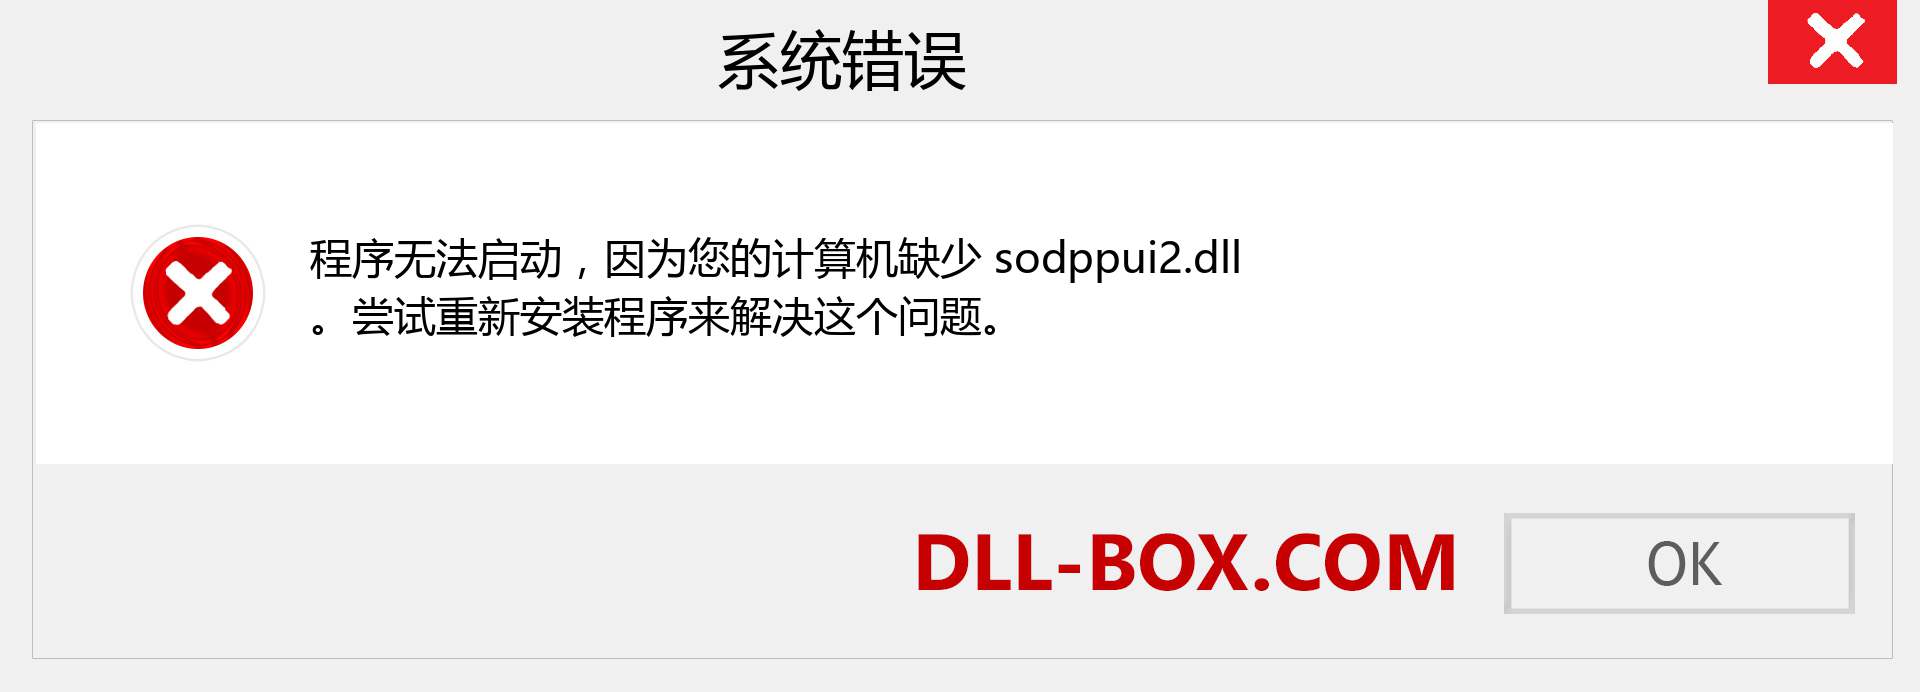 sodppui2.dll 文件丢失？。 适用于 Windows 7、8、10 的下载 - 修复 Windows、照片、图像上的 sodppui2 dll 丢失错误